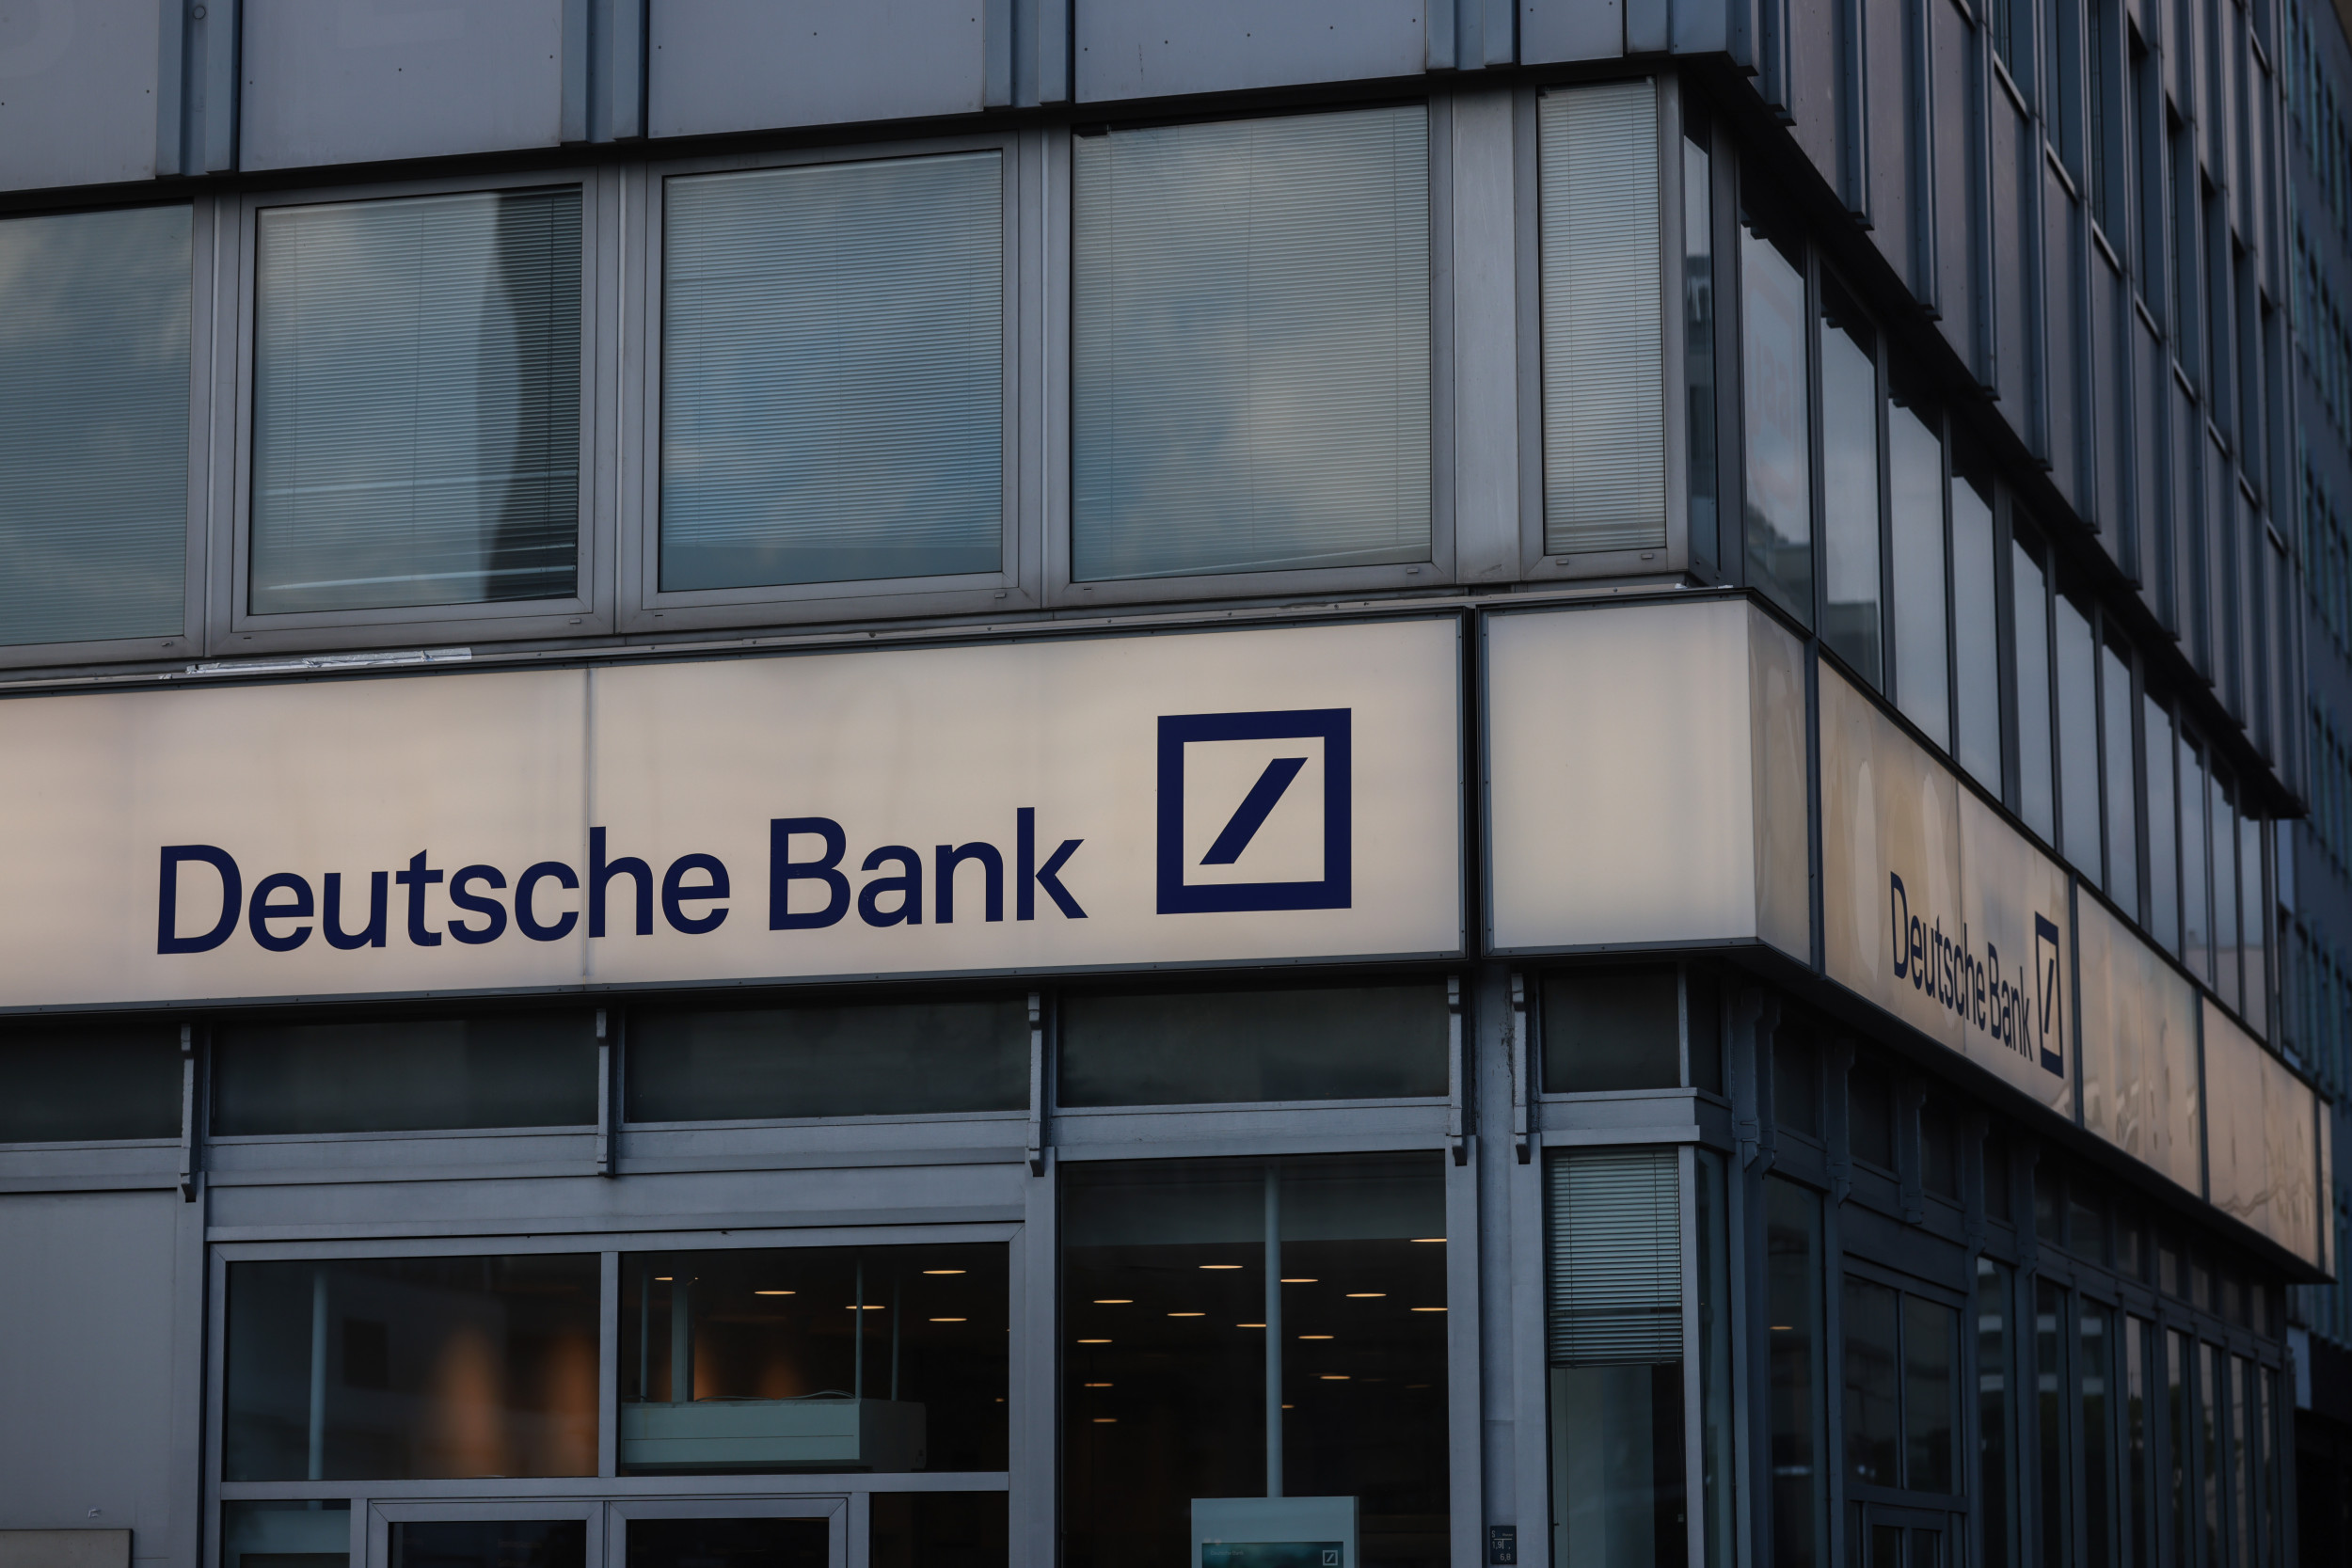 الغرامة التي فرضتها هيئة الأوراق المالية والبورصة بقيمة 25 مليون دولار تهز شركة DWS التابعة ل Deutsche Bank